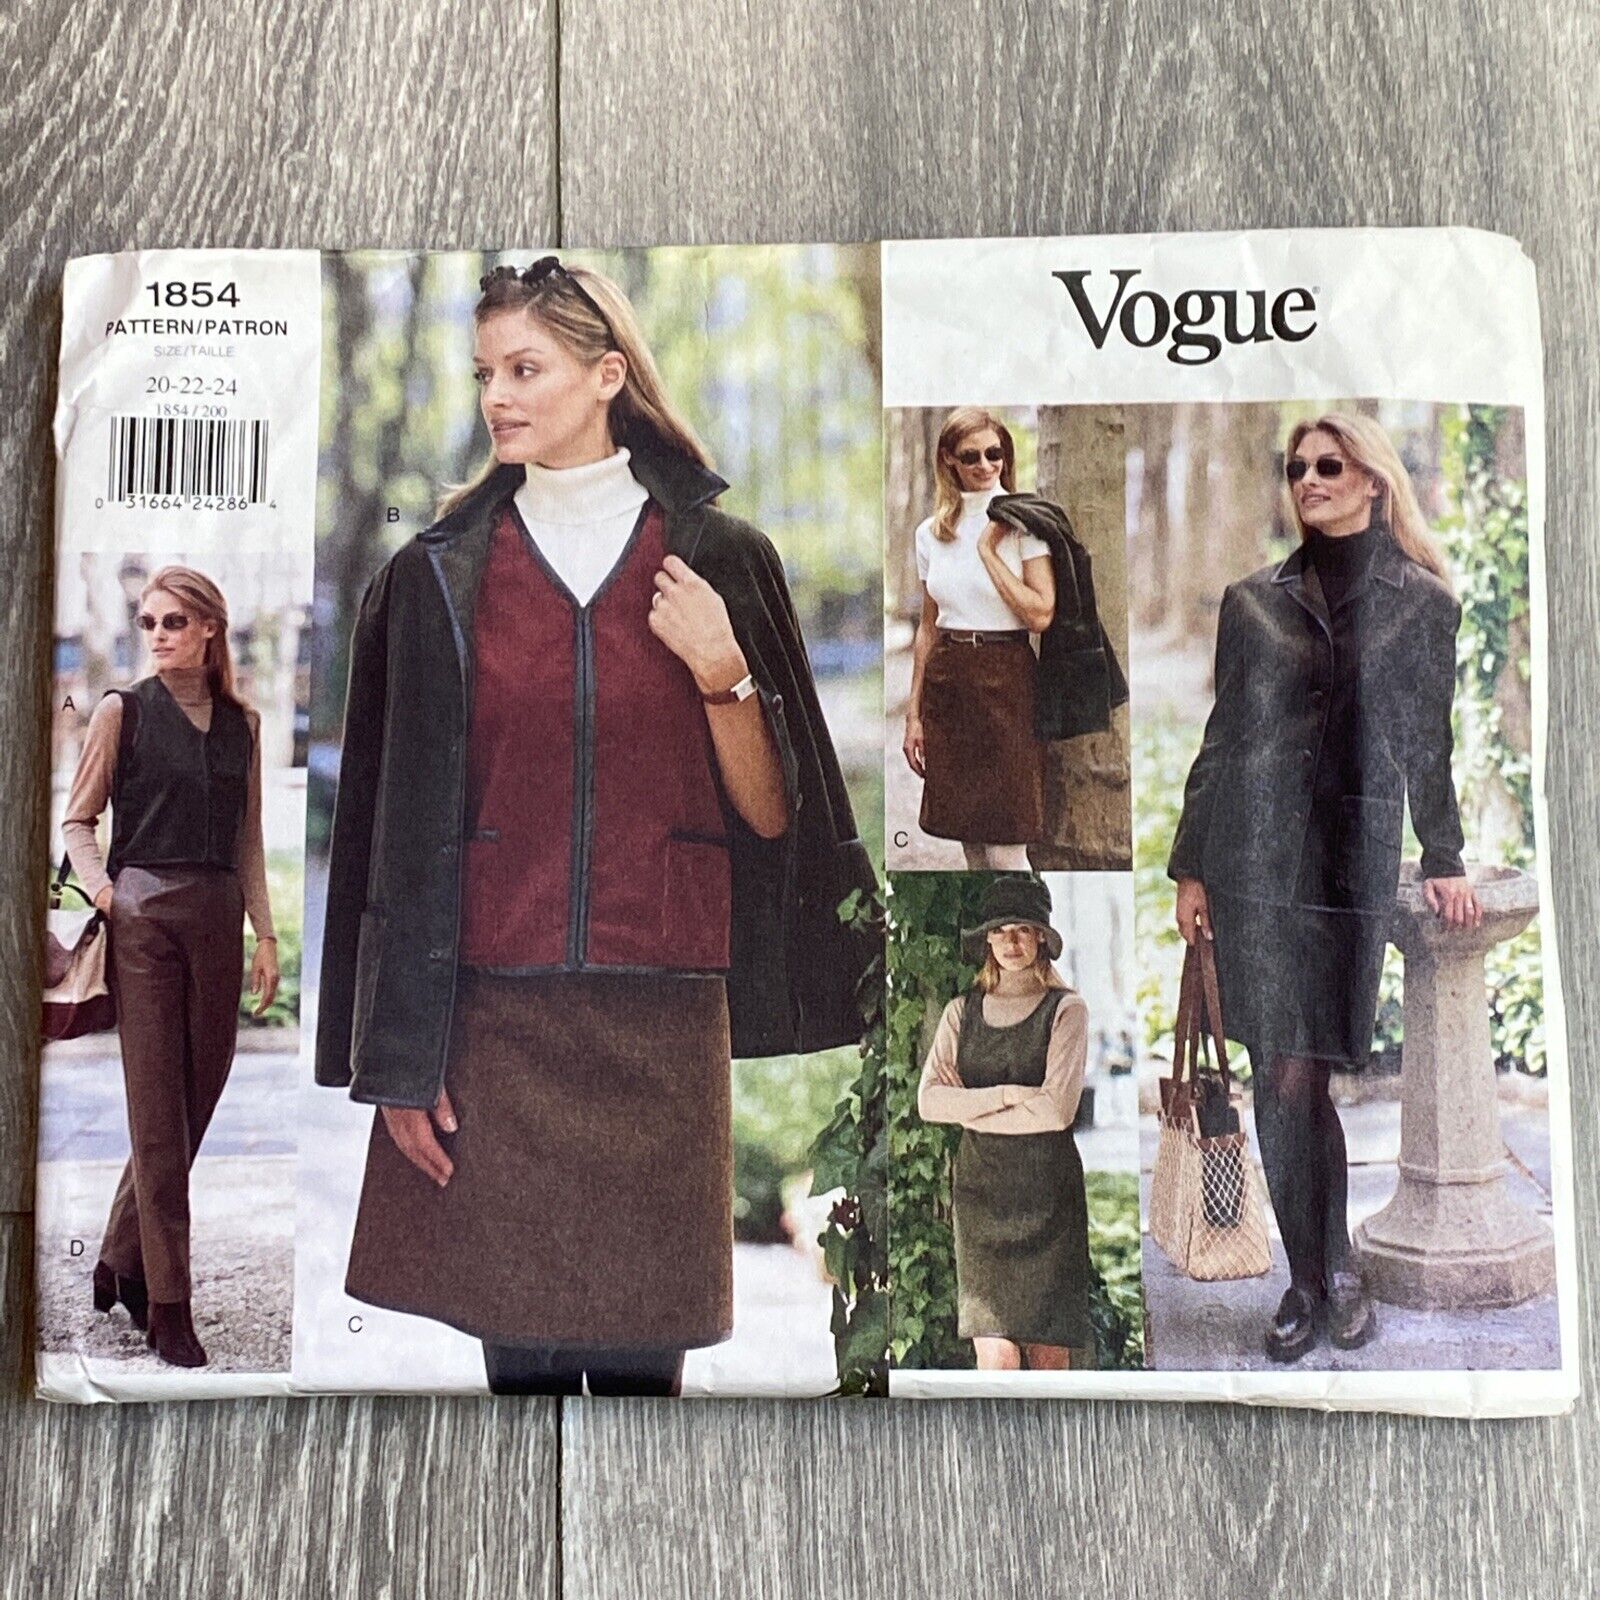 Vintage Vogue sewing pattern #1854 women plus size 20-22-24 career wardrobe 1996